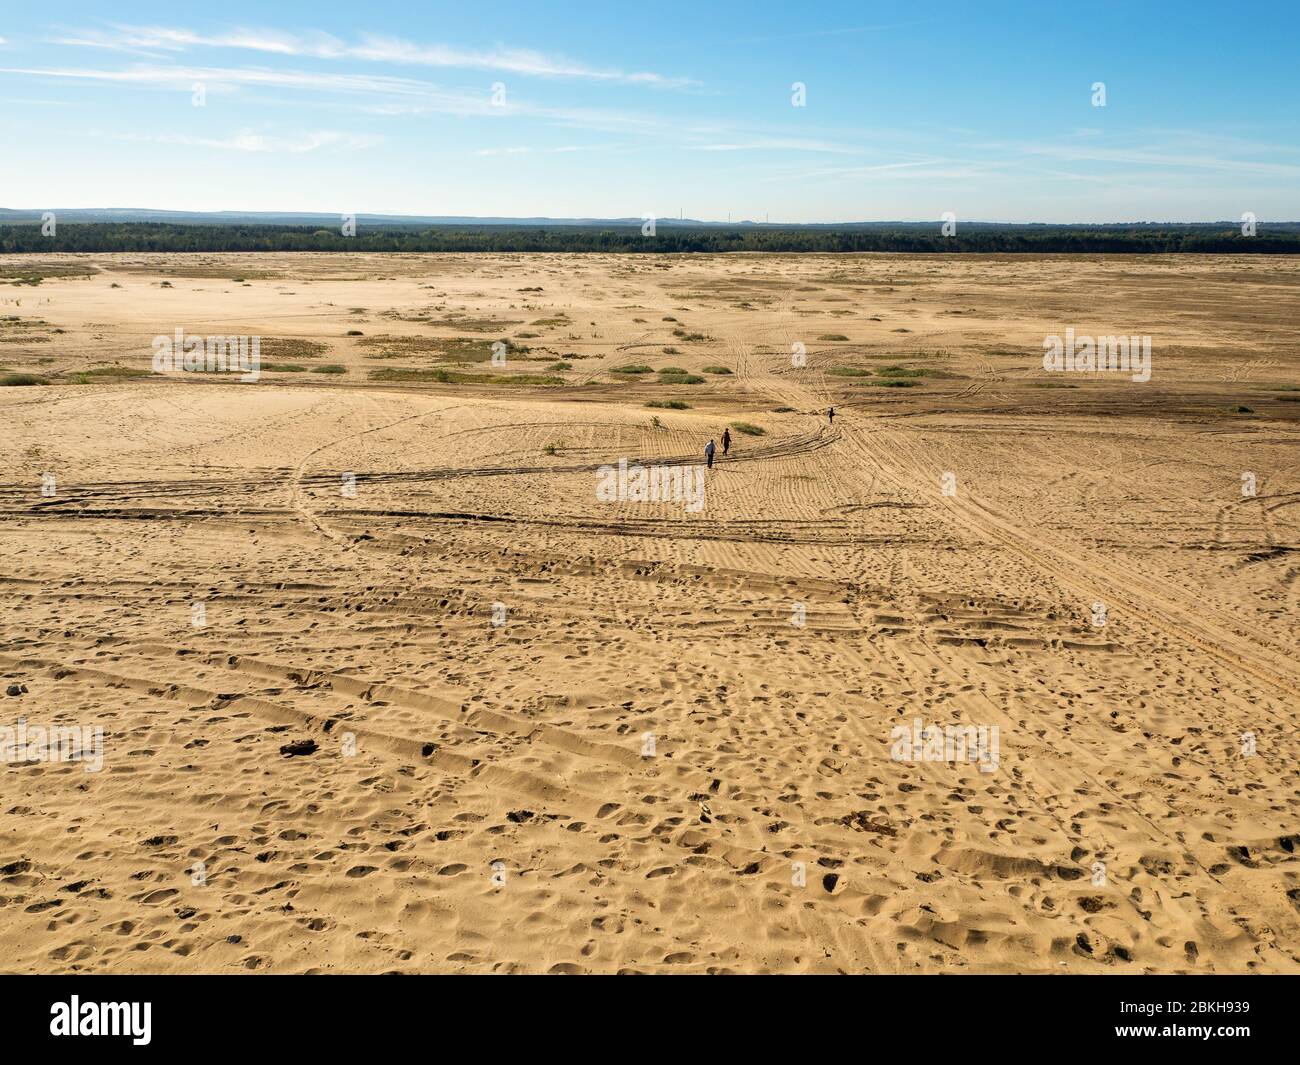 Blendow Wüste (Pustynia Blendowska) in Polen. Das größte Binnenland, weit weg von jedem Meer, Gebiet von losem Sand in Mitteleuropa. Einzigartige Touristenattraktion Stockfoto